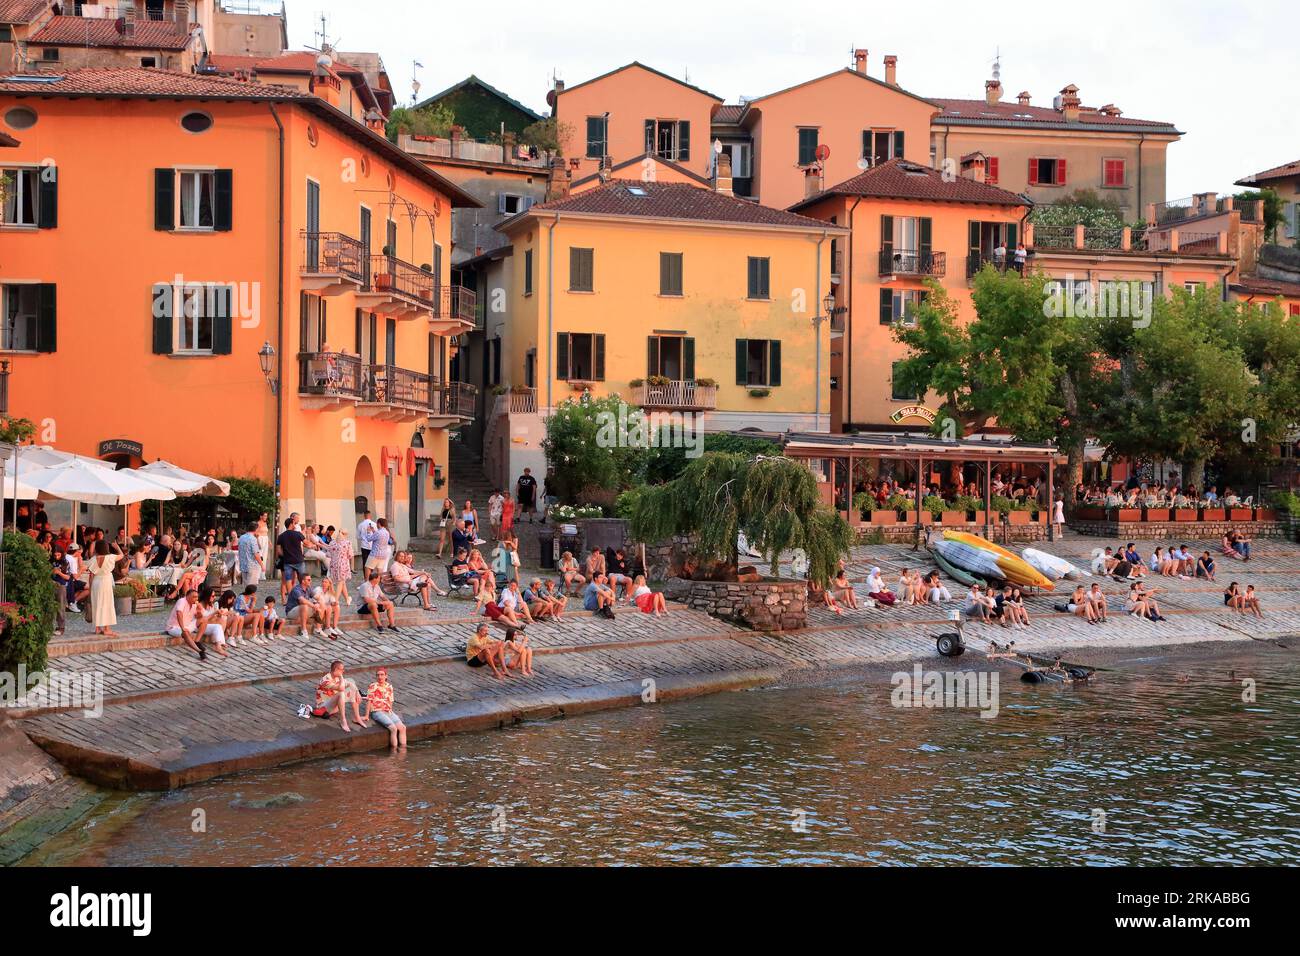 Old port of Varenna town, Lake Como (Lago di Como), Italy Stock Photo